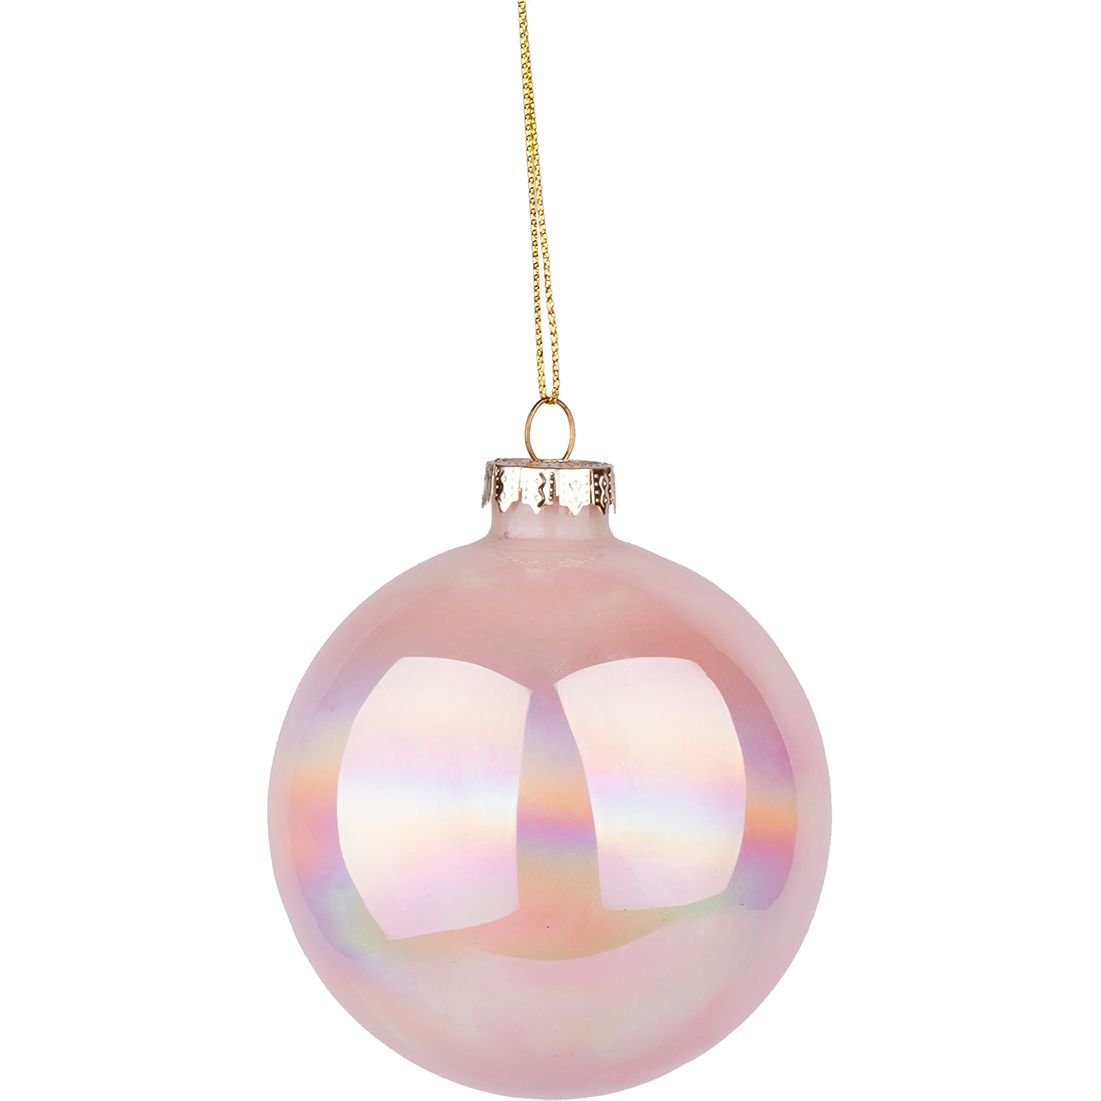 Новогодняя игрушка Novogod'ko Шар 10 cм глянцевая мраморная светло-розовая (973821) - фото 1